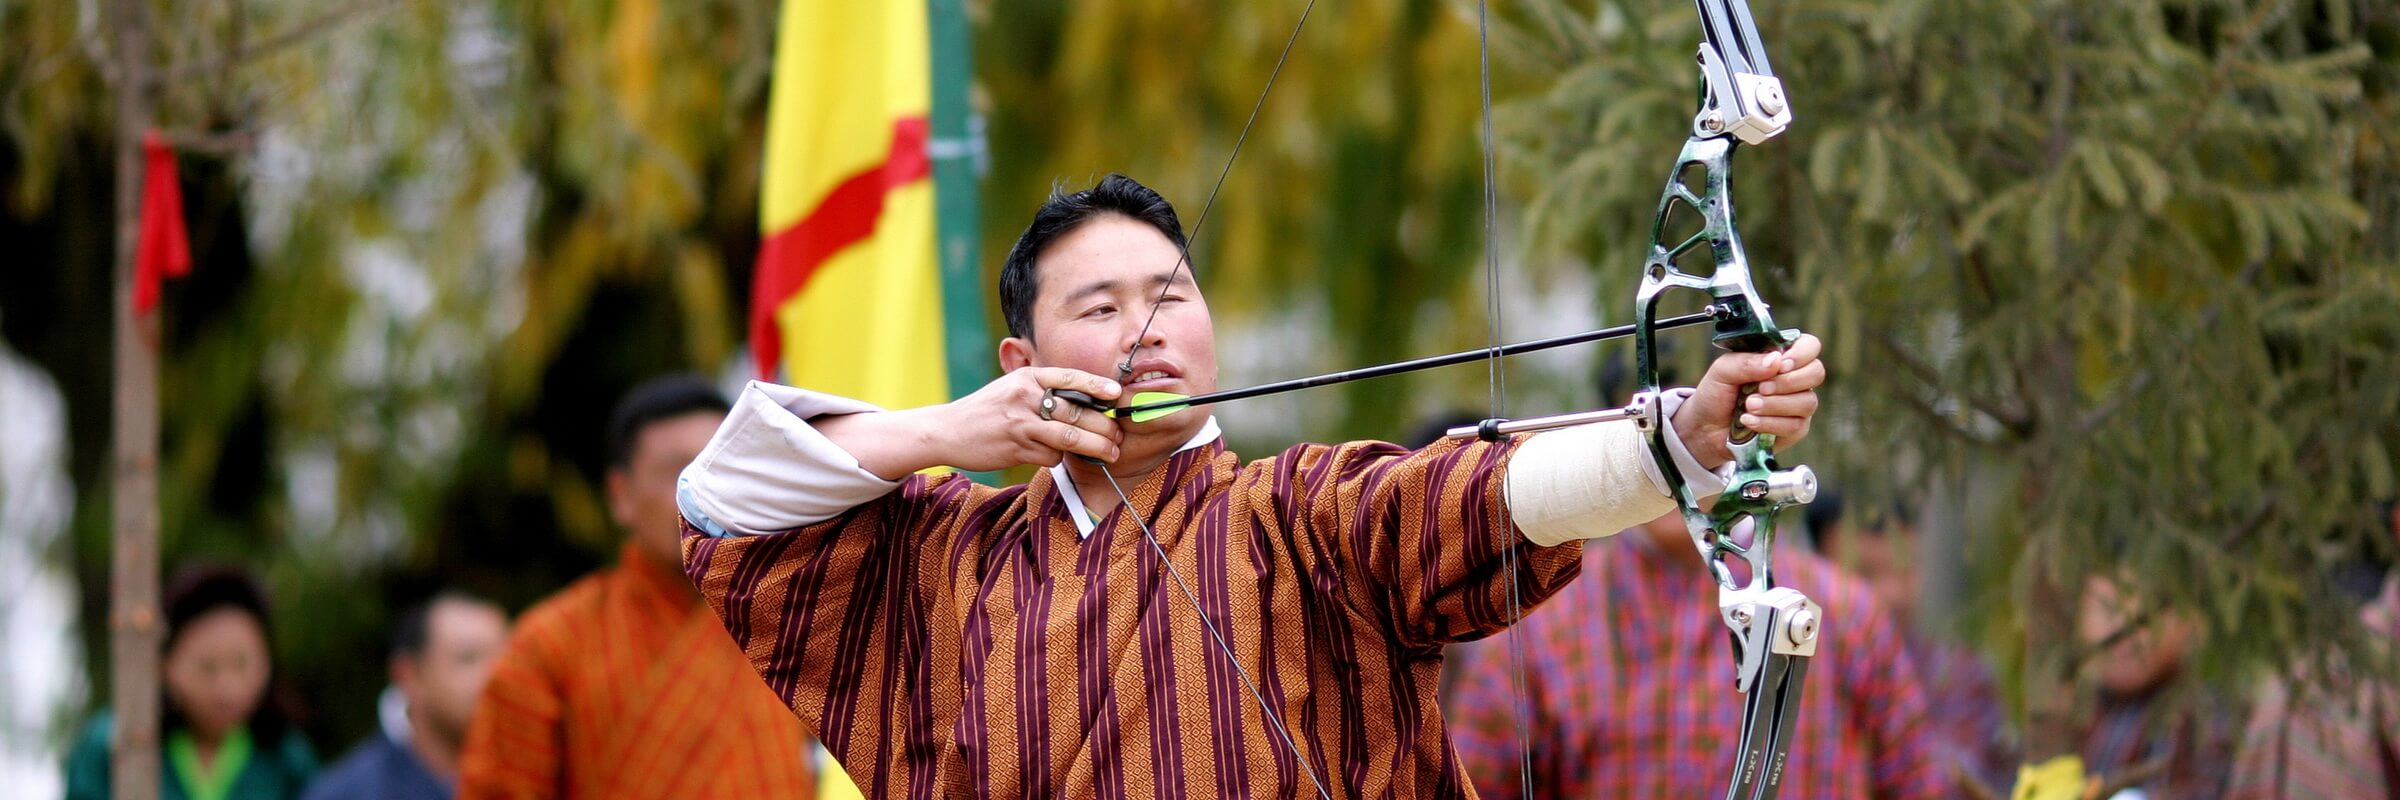 Bogenschießen ist der Nationalsport im Königreich Bhutan – Wettbewerbe zwischen benachbarten Dörfern finden häufig statt.